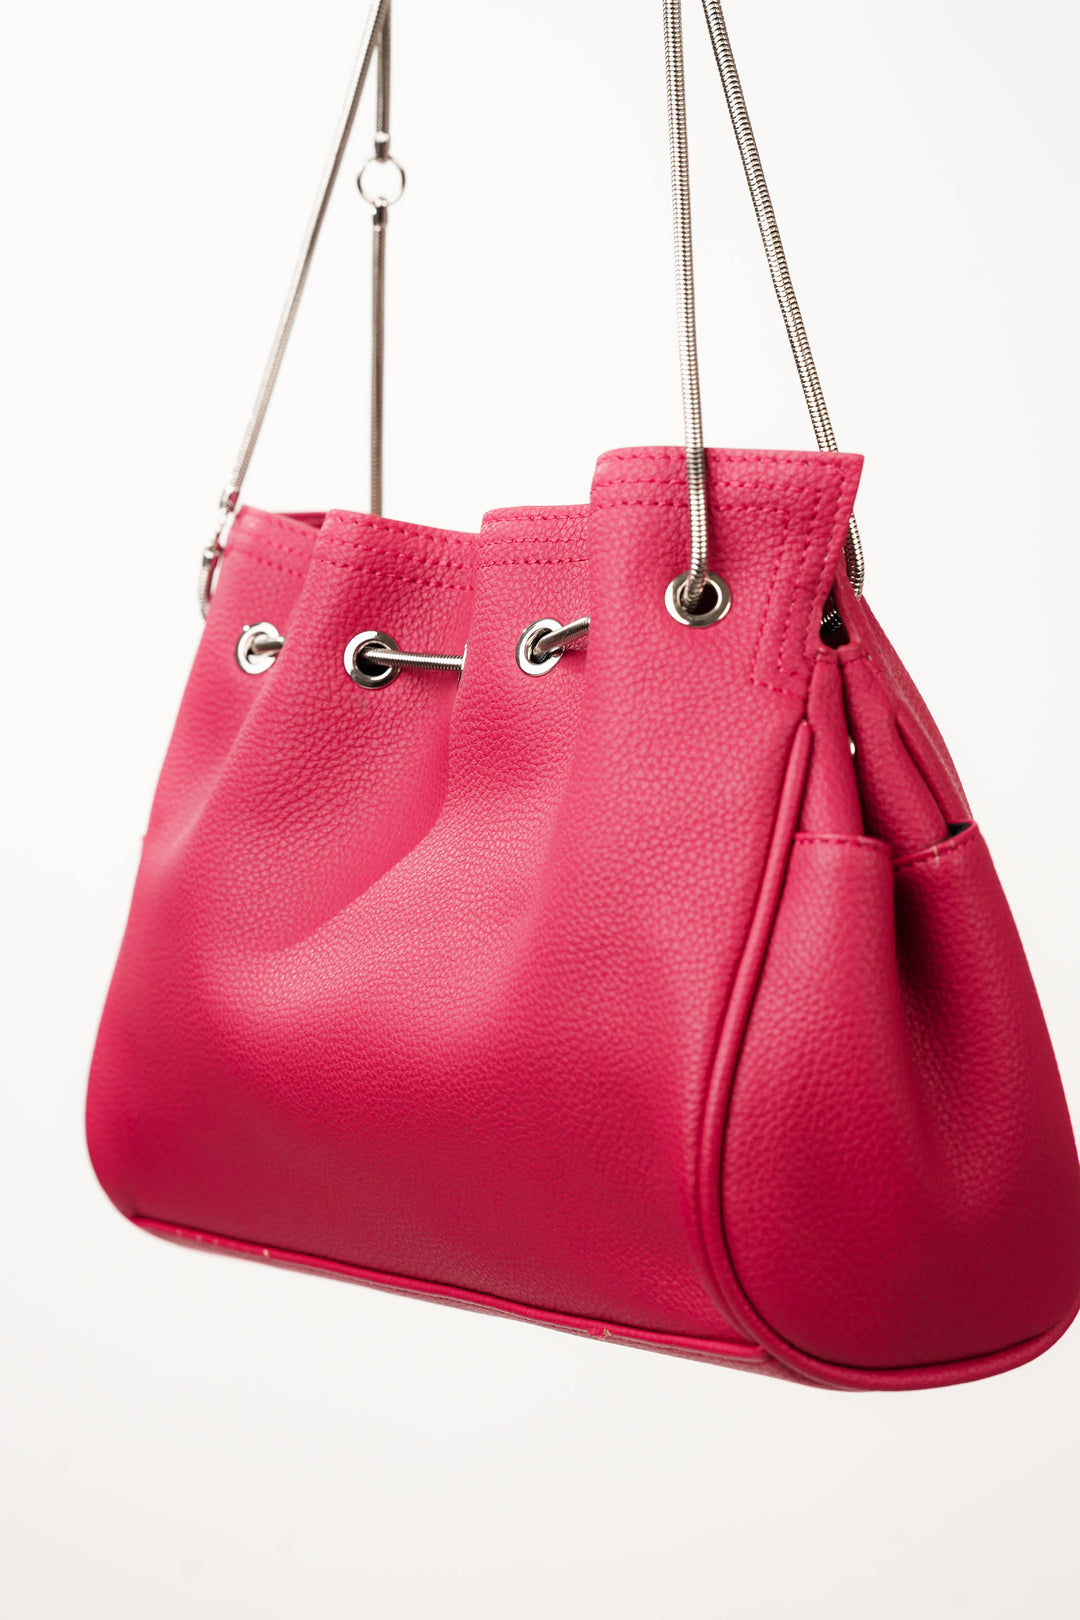 Solid Hot Pink Shoulder Bag